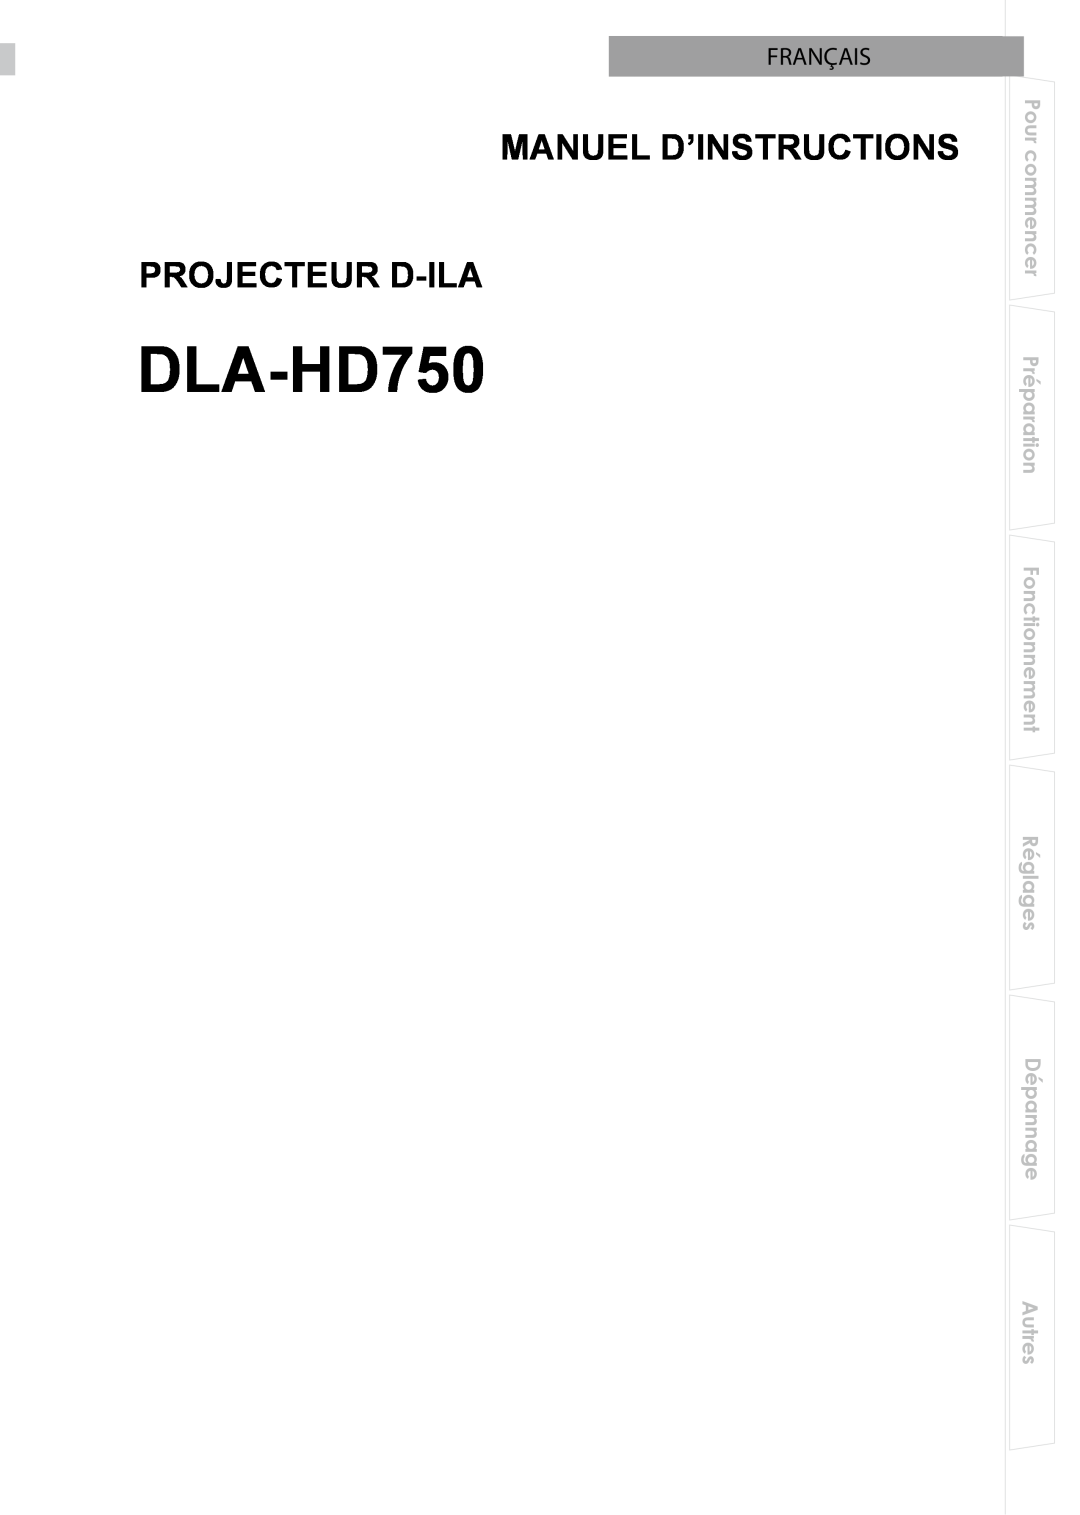 JVC DLA-HD750 manual Manuel D’Instructions Projecteur D-Ila, Français 